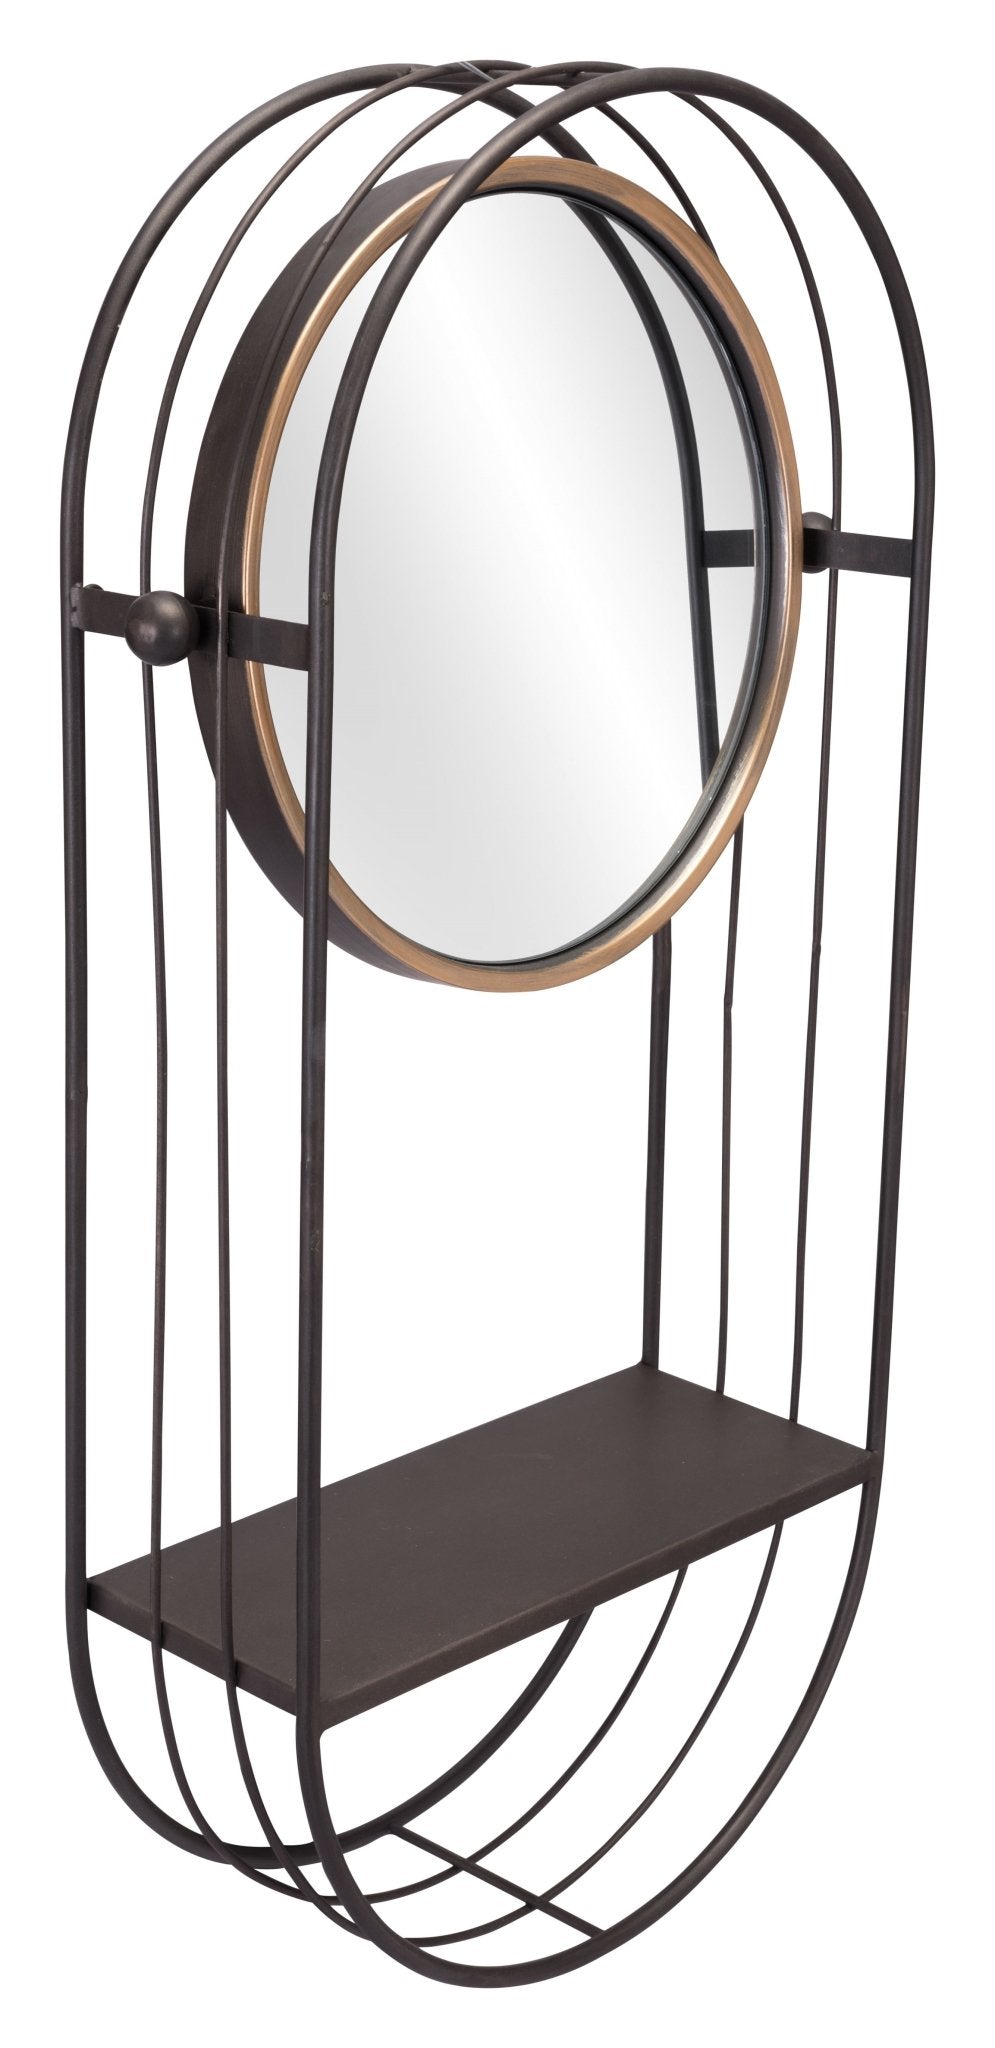 Saroni Mirror Shelf Gray - Versatile Home